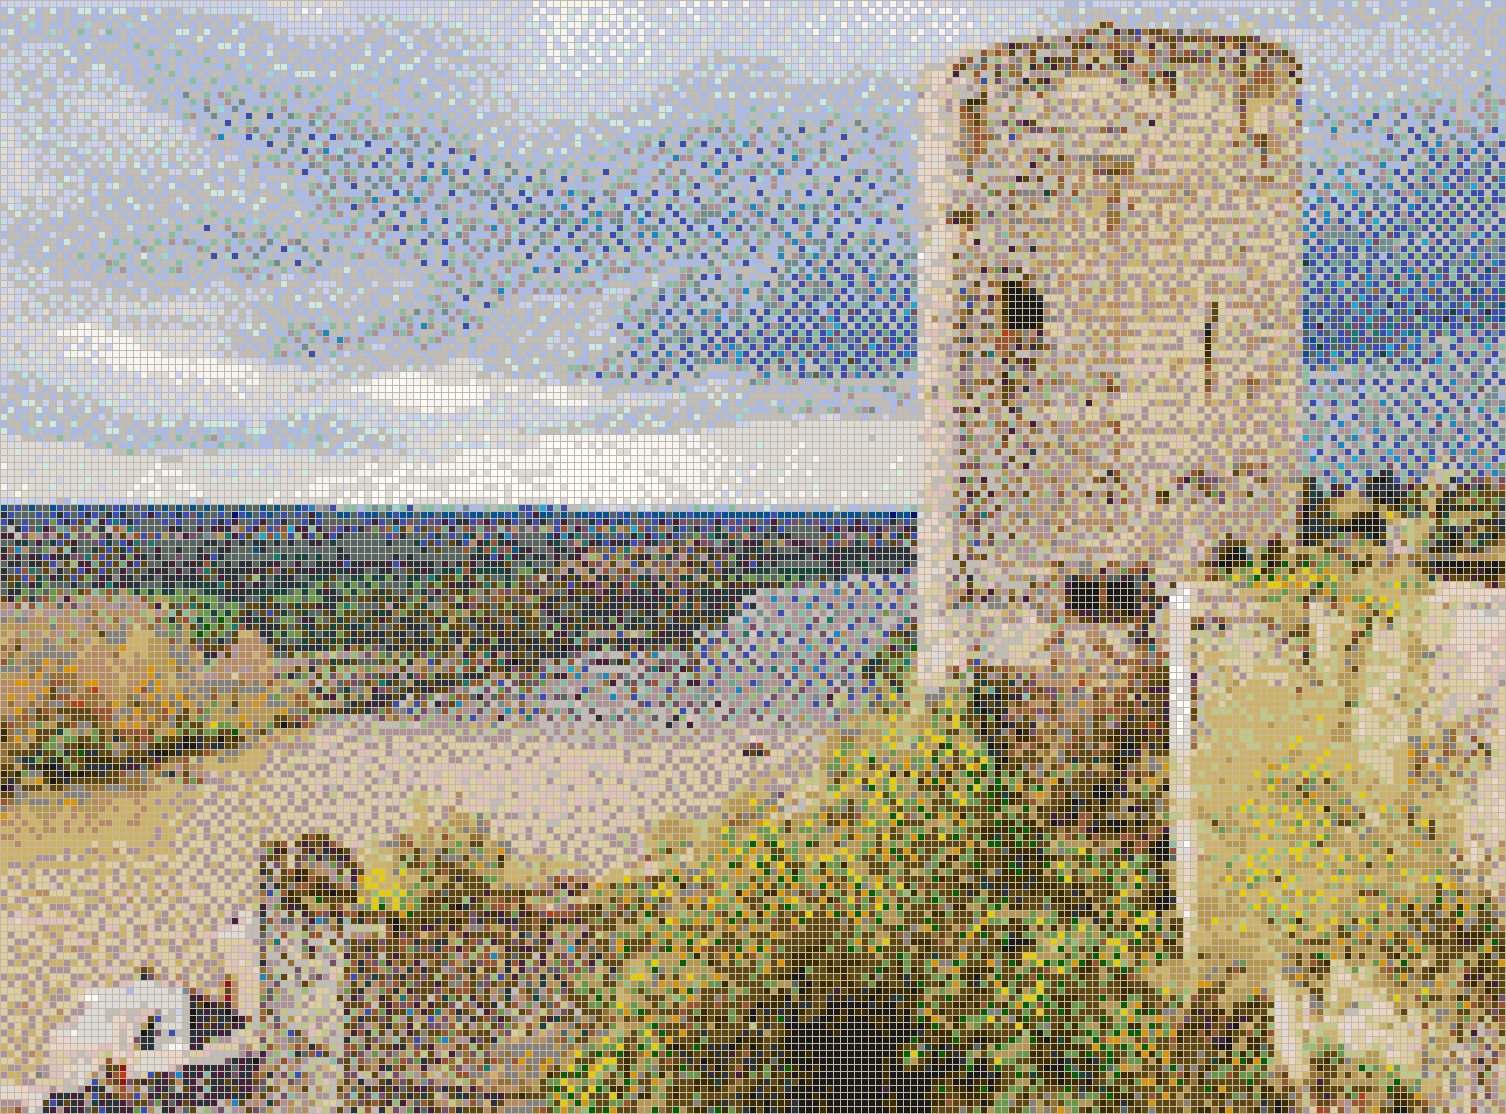 Loire Valley Tower (Château de Chinon) - Mosaic Tile Picture Art